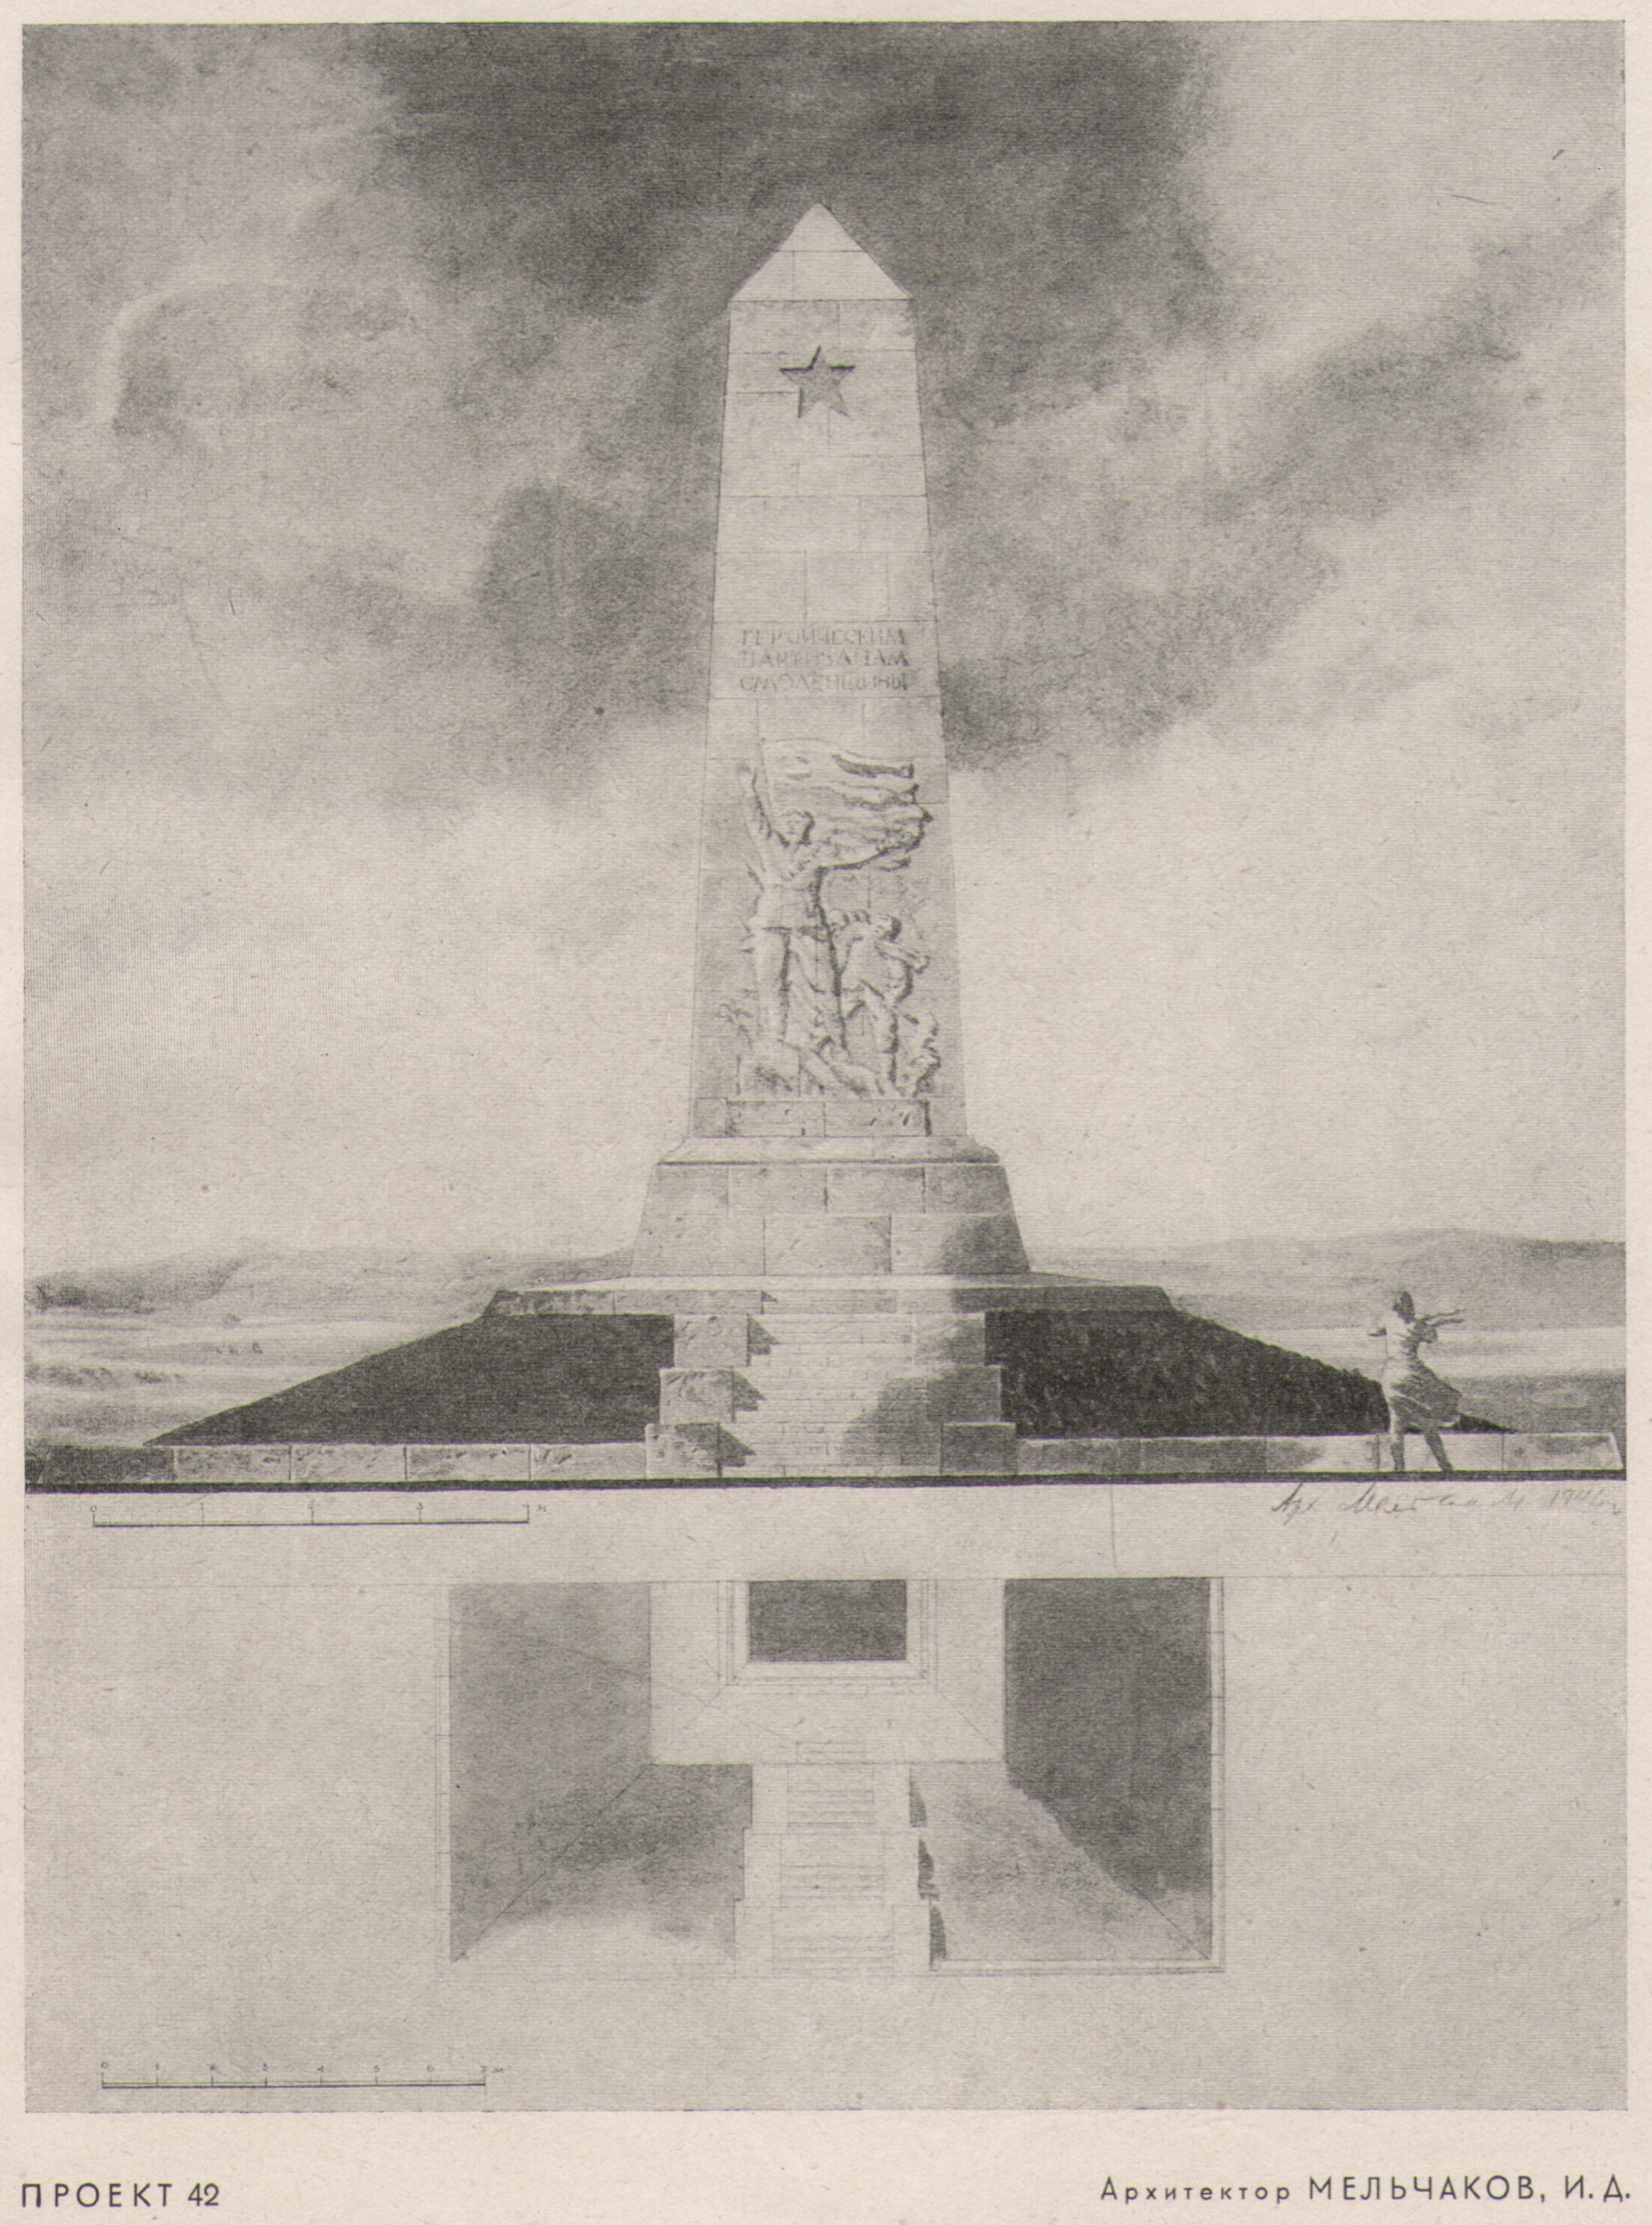 ПРОЕКТ 42. Архитектор МЕЛЬЧАКОВ, И. Д. Памятник представляет собой обелиск, поставленный на холме